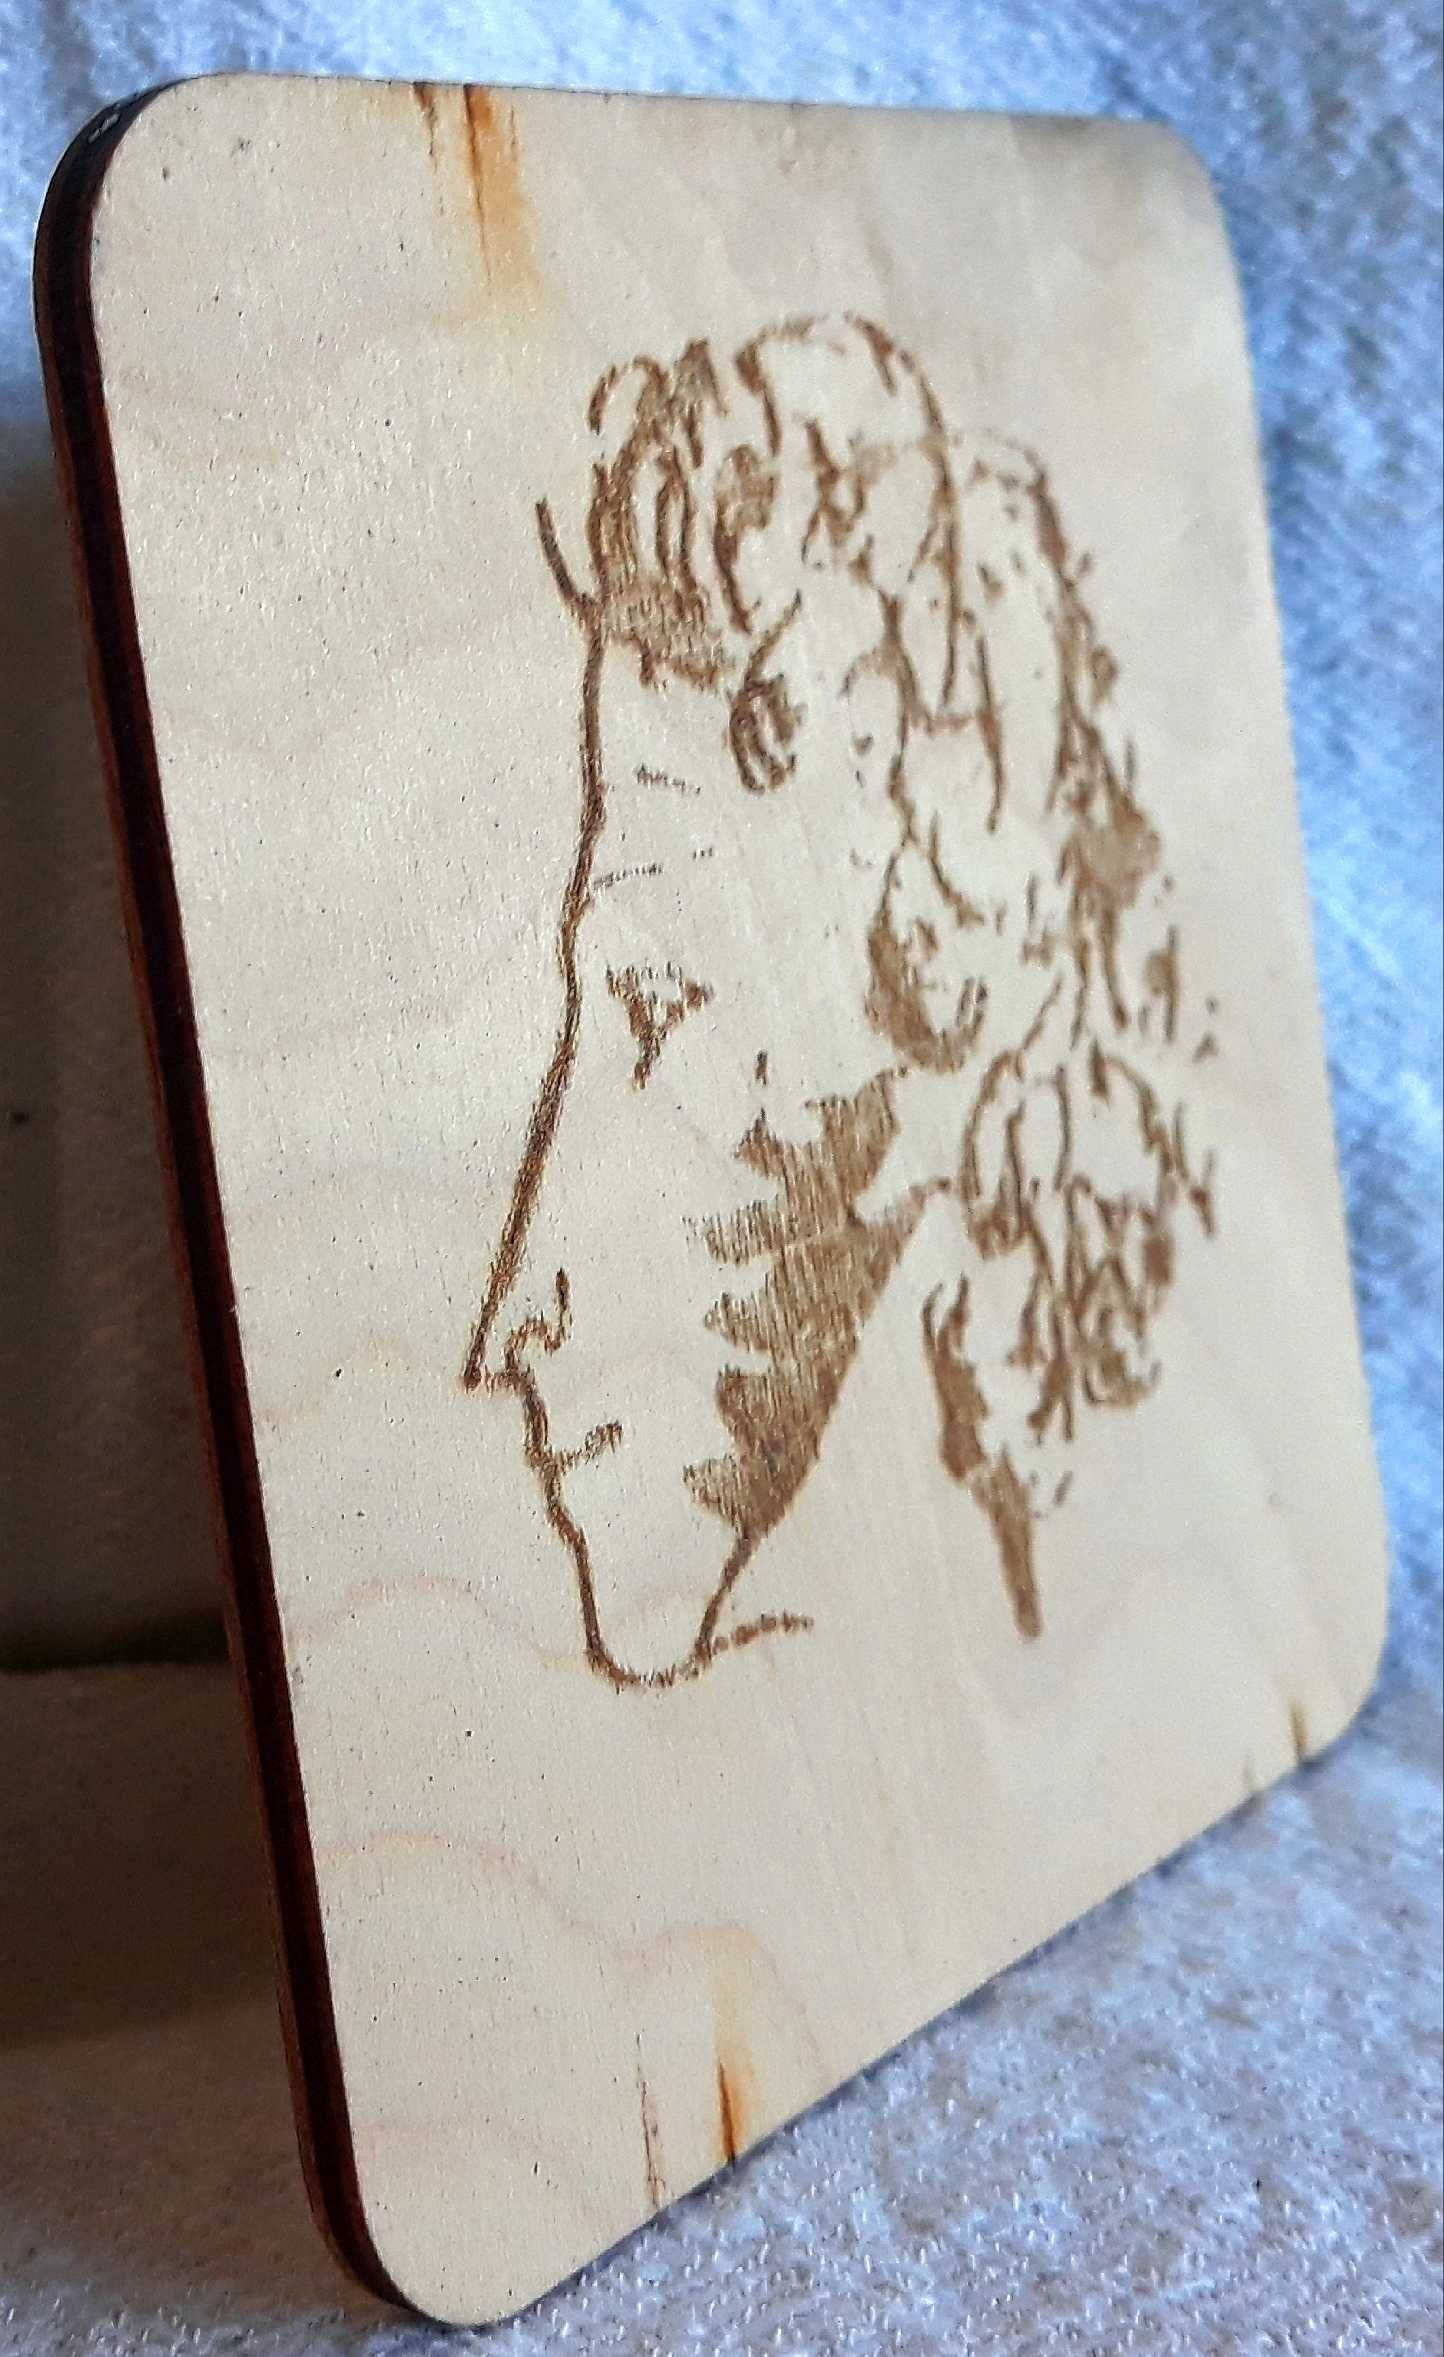 Плоча на руски поет Пушкин.пирография